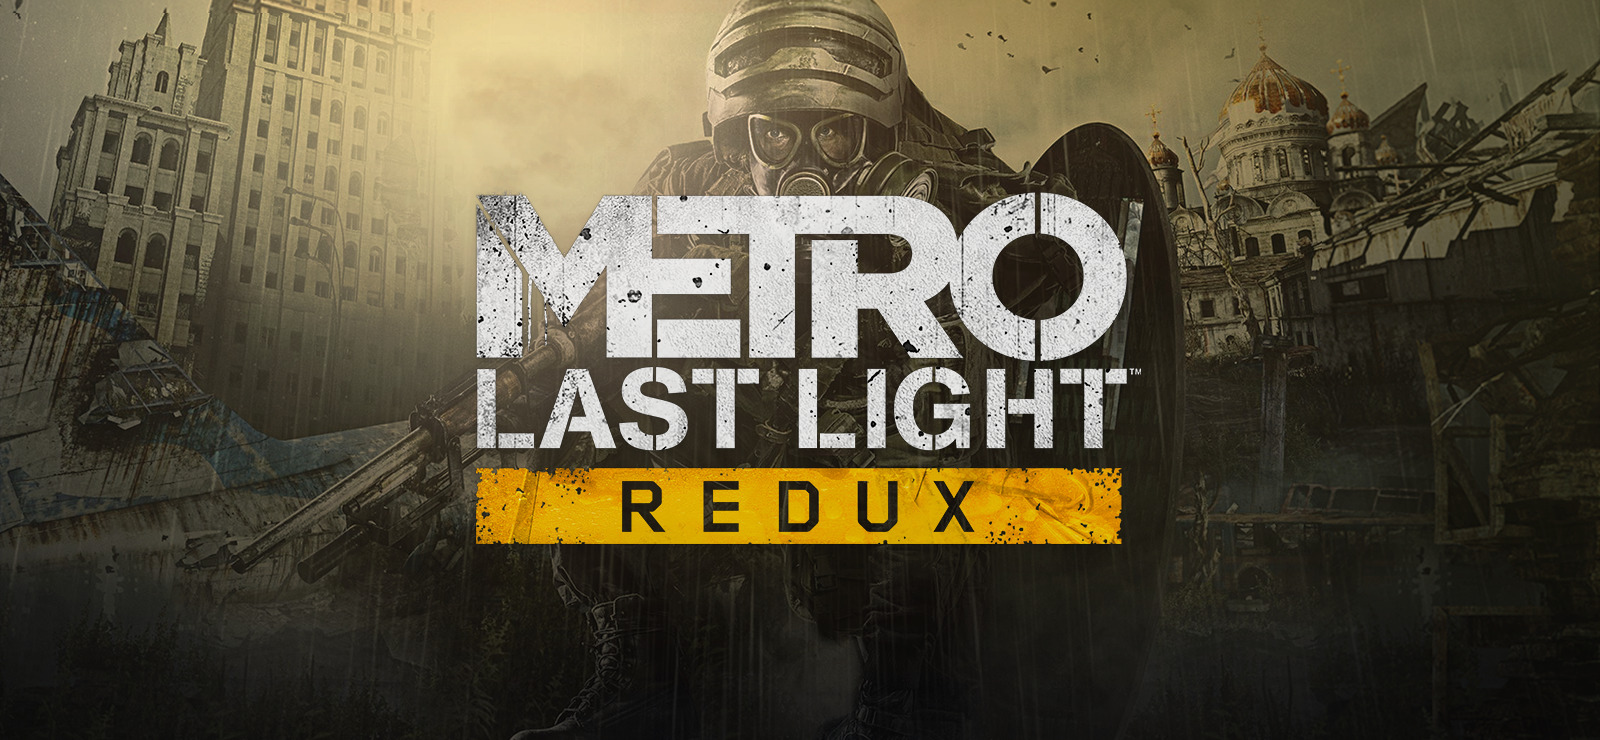 Metro: Last Light Redux sur GOG.com